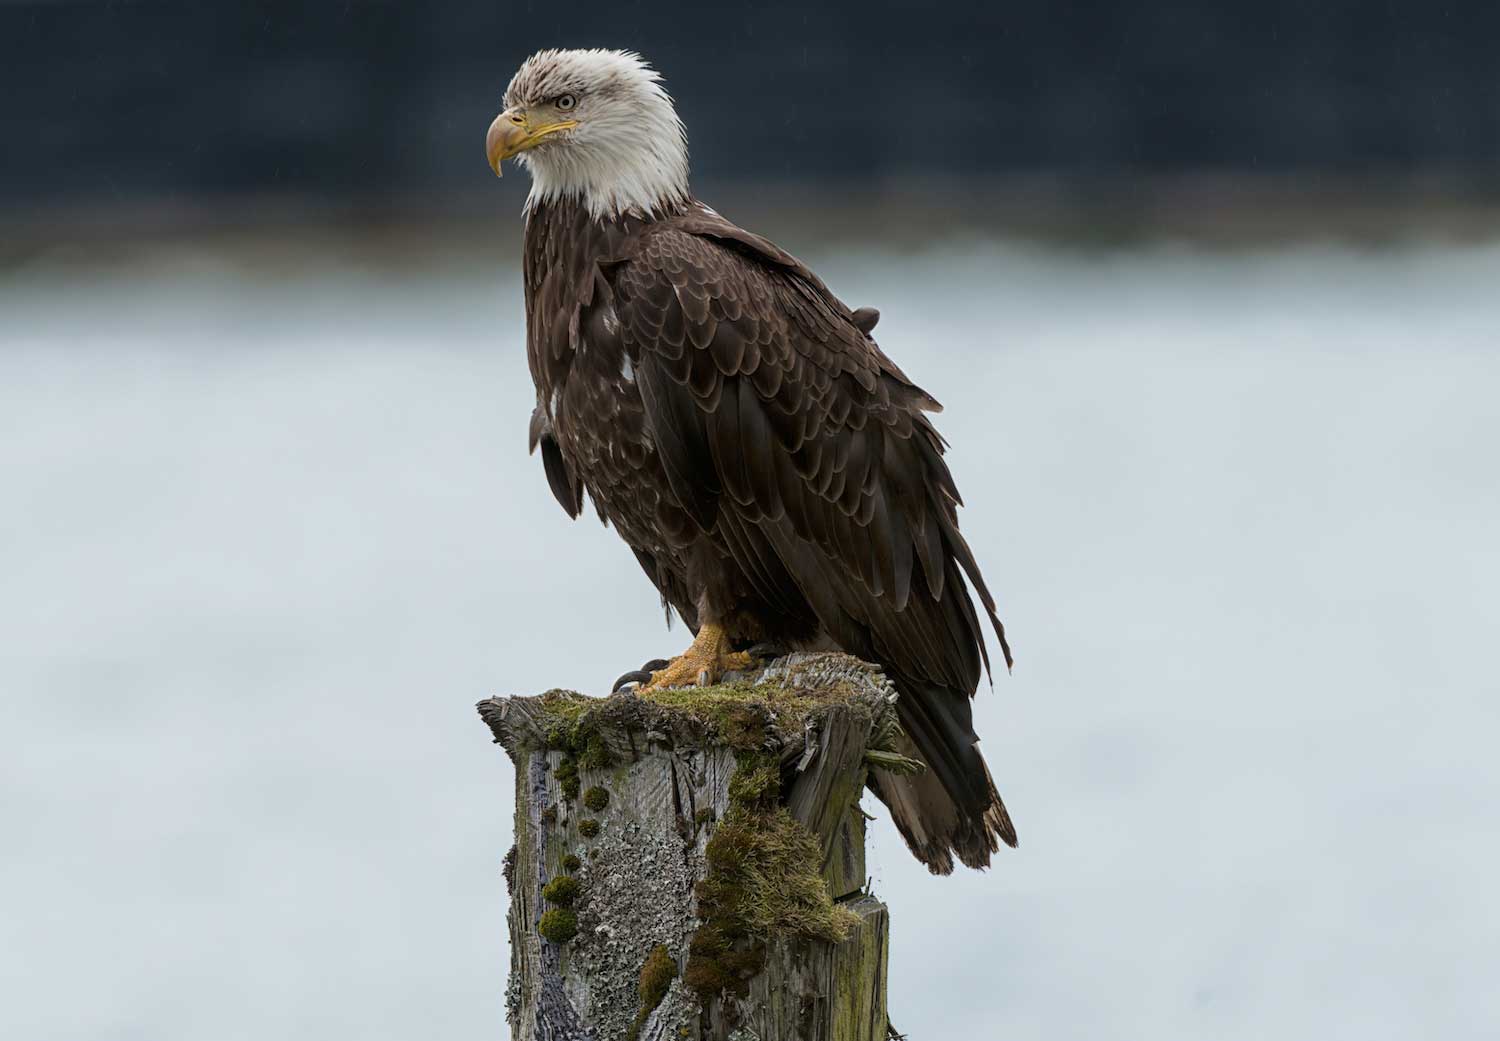 A bald eagle perched.